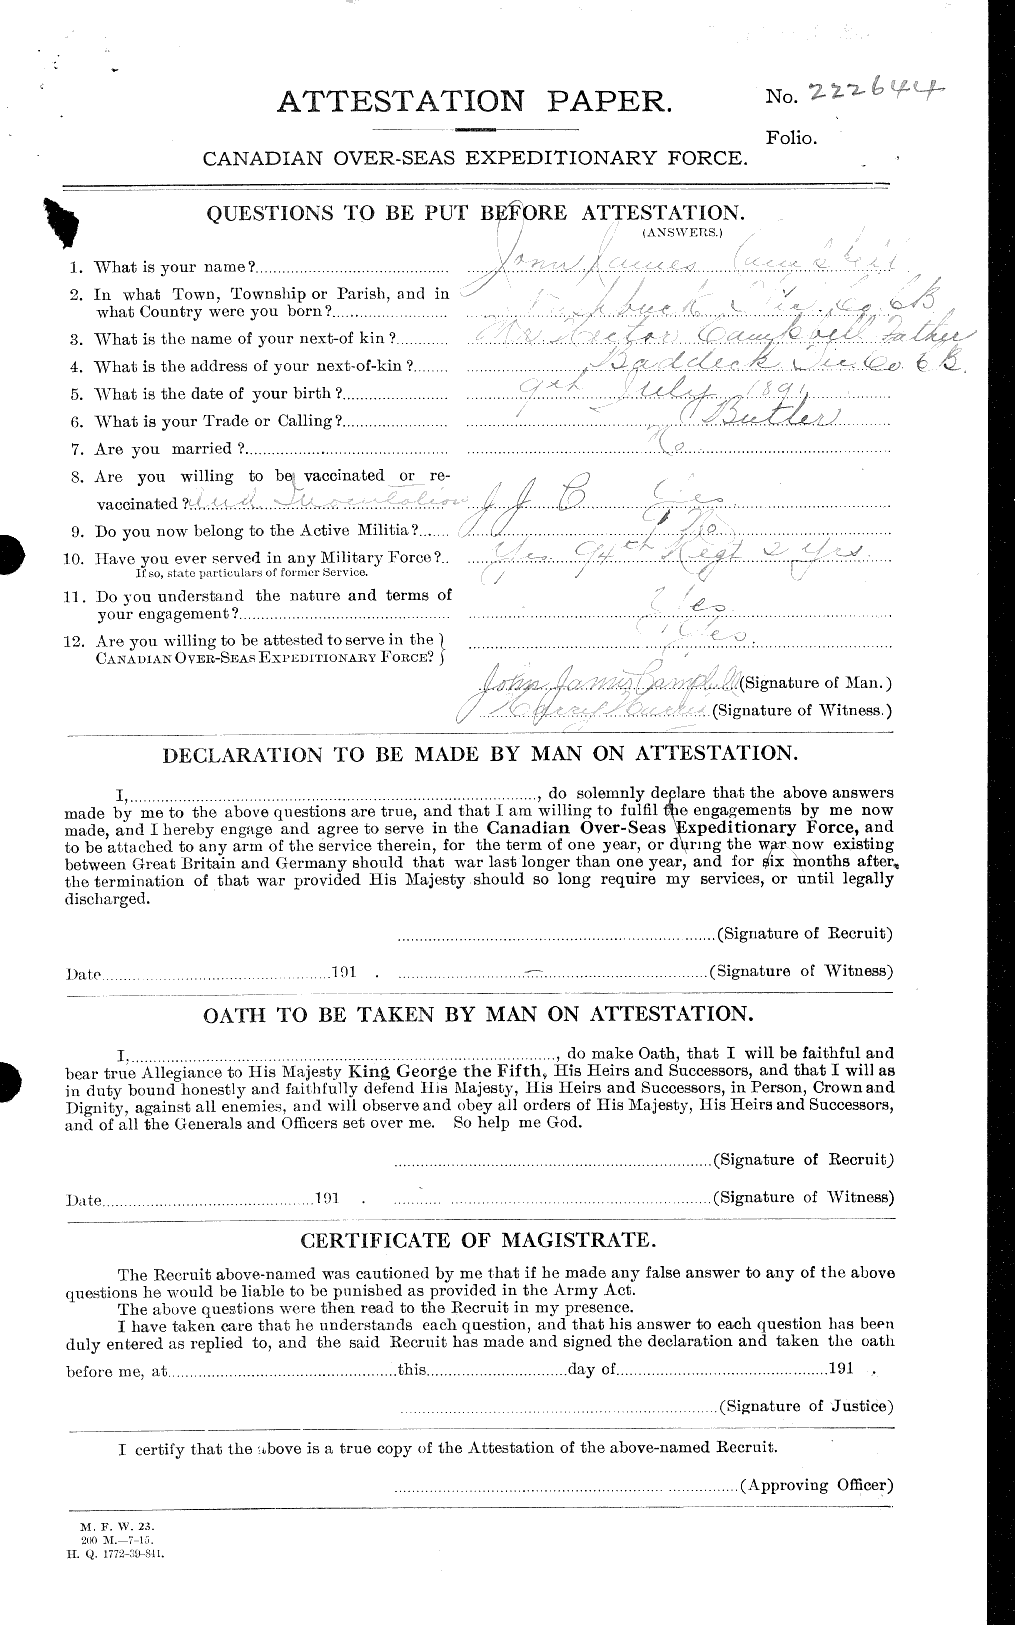 Dossiers du Personnel de la Première Guerre mondiale - CEC 008543a